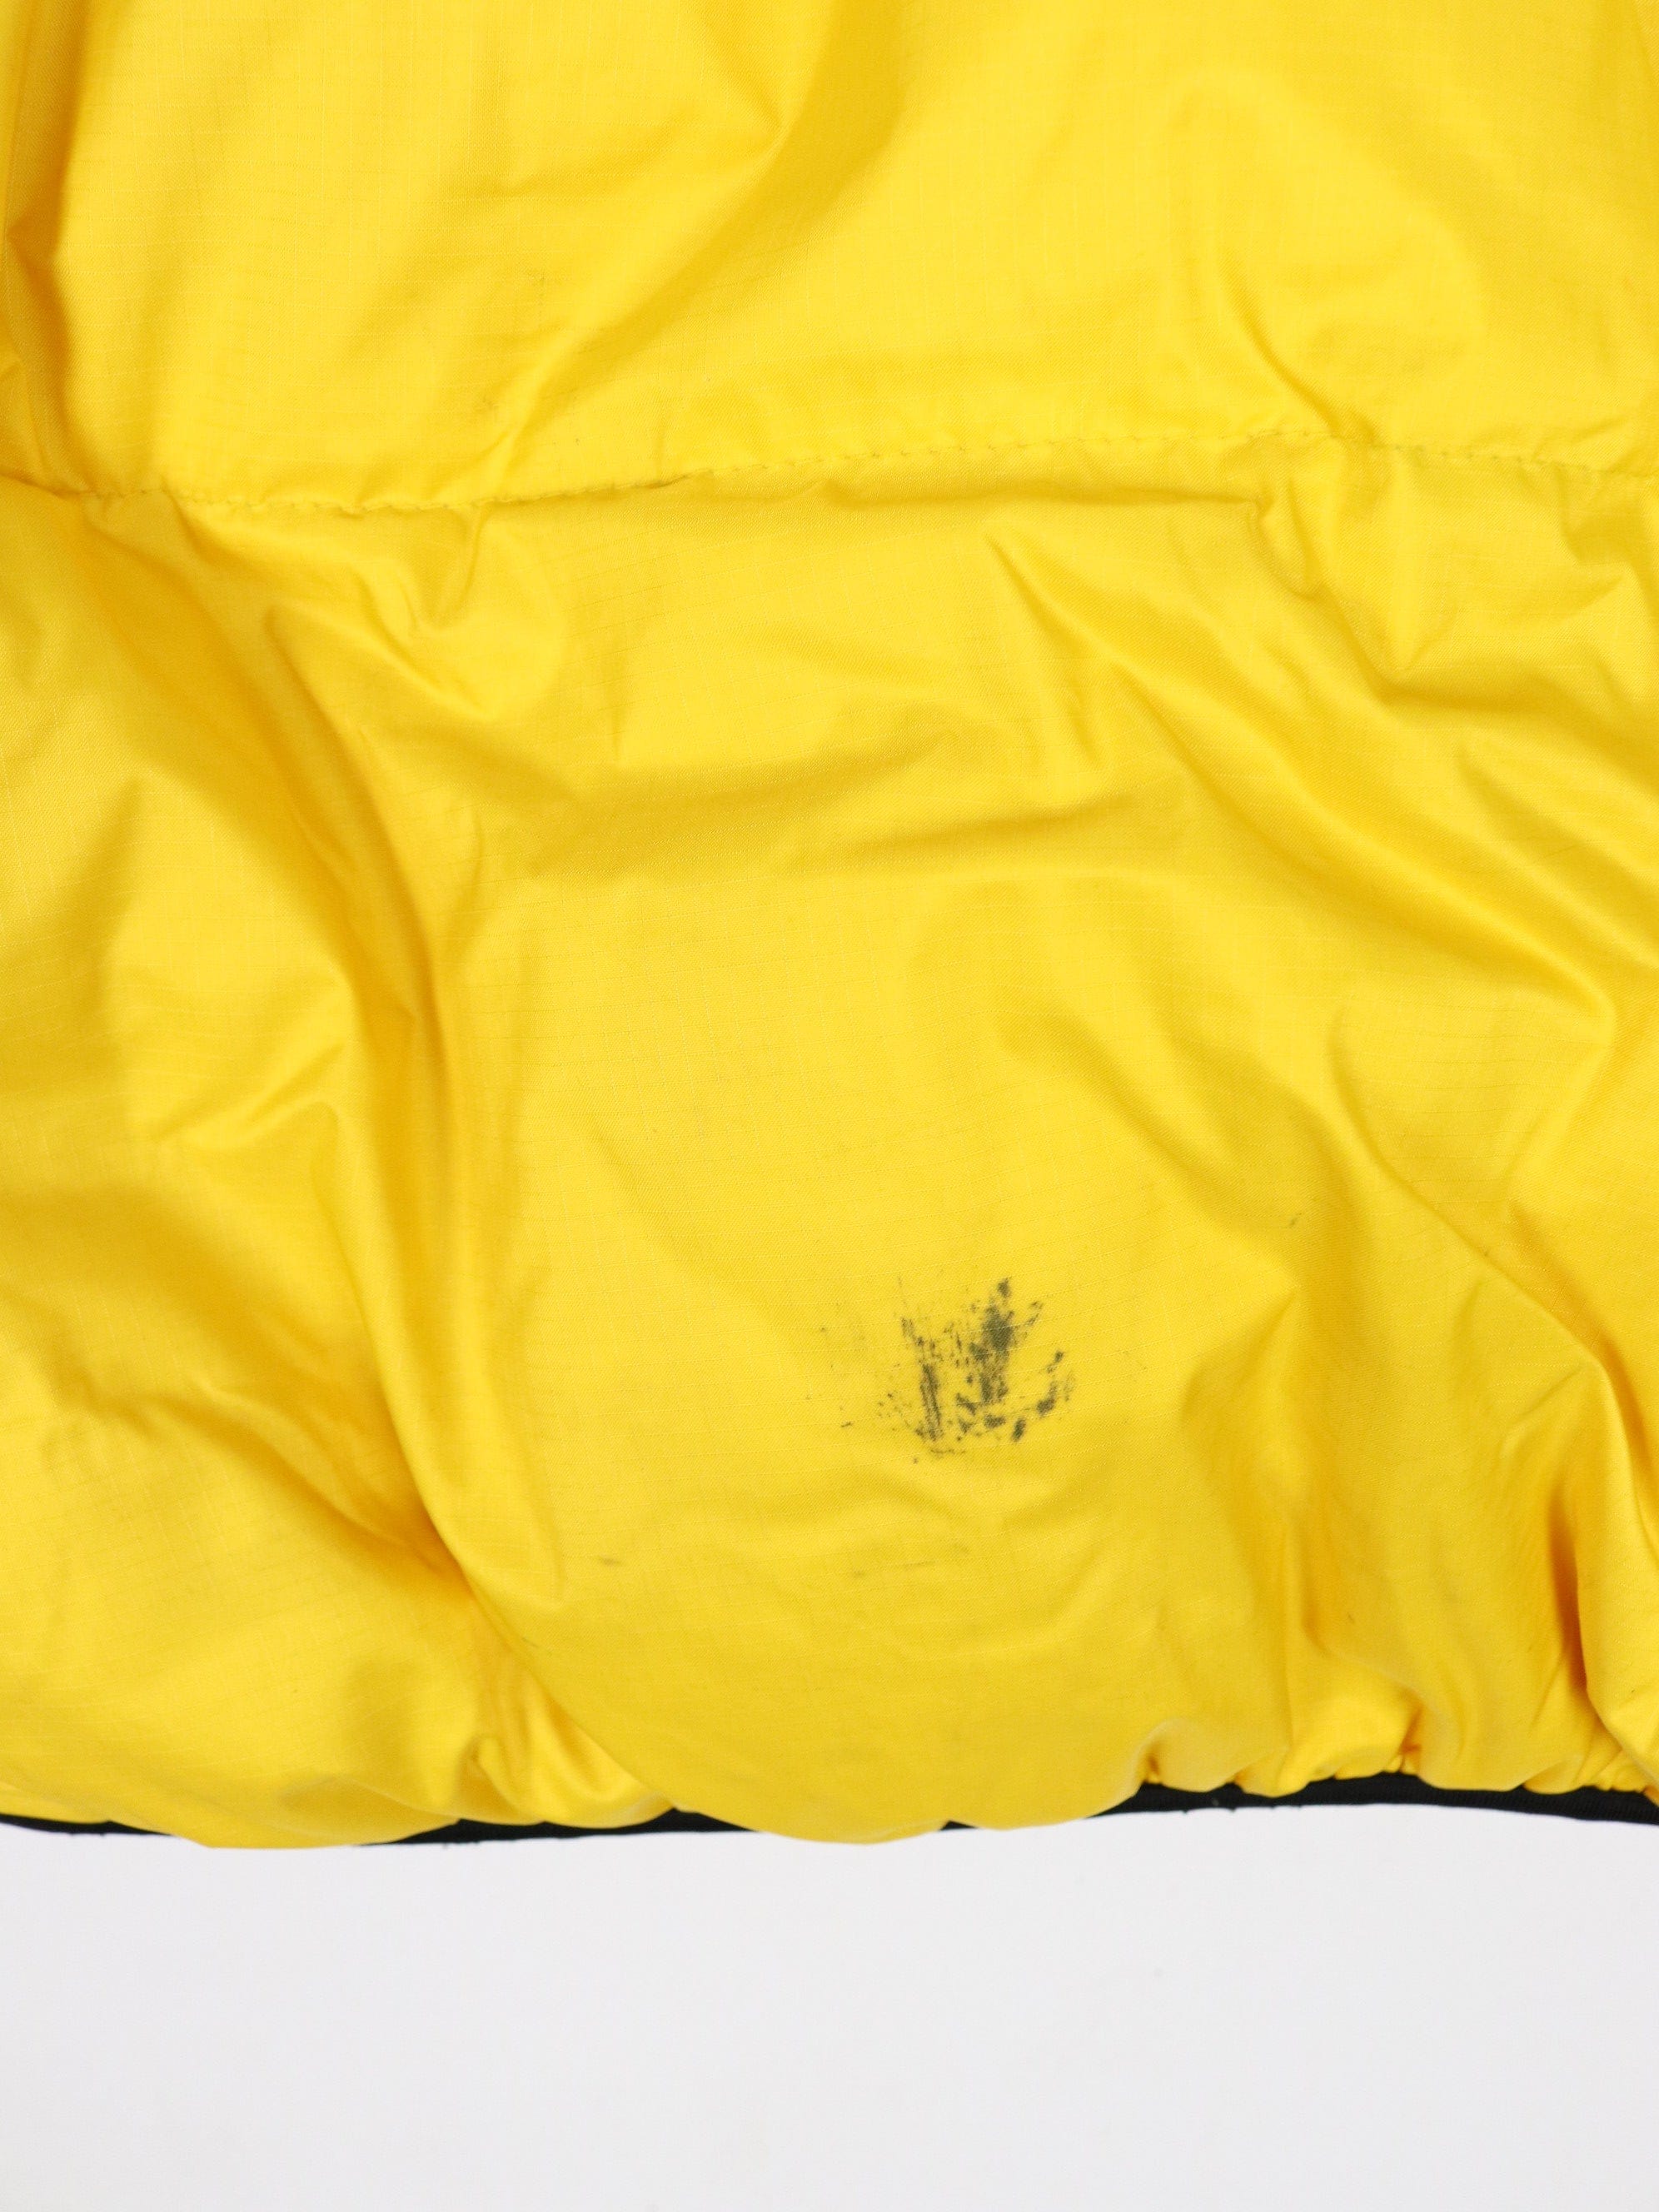 Chaps Ralph Lauren Coat Men's 3XB Tan Colorblock Zip Up